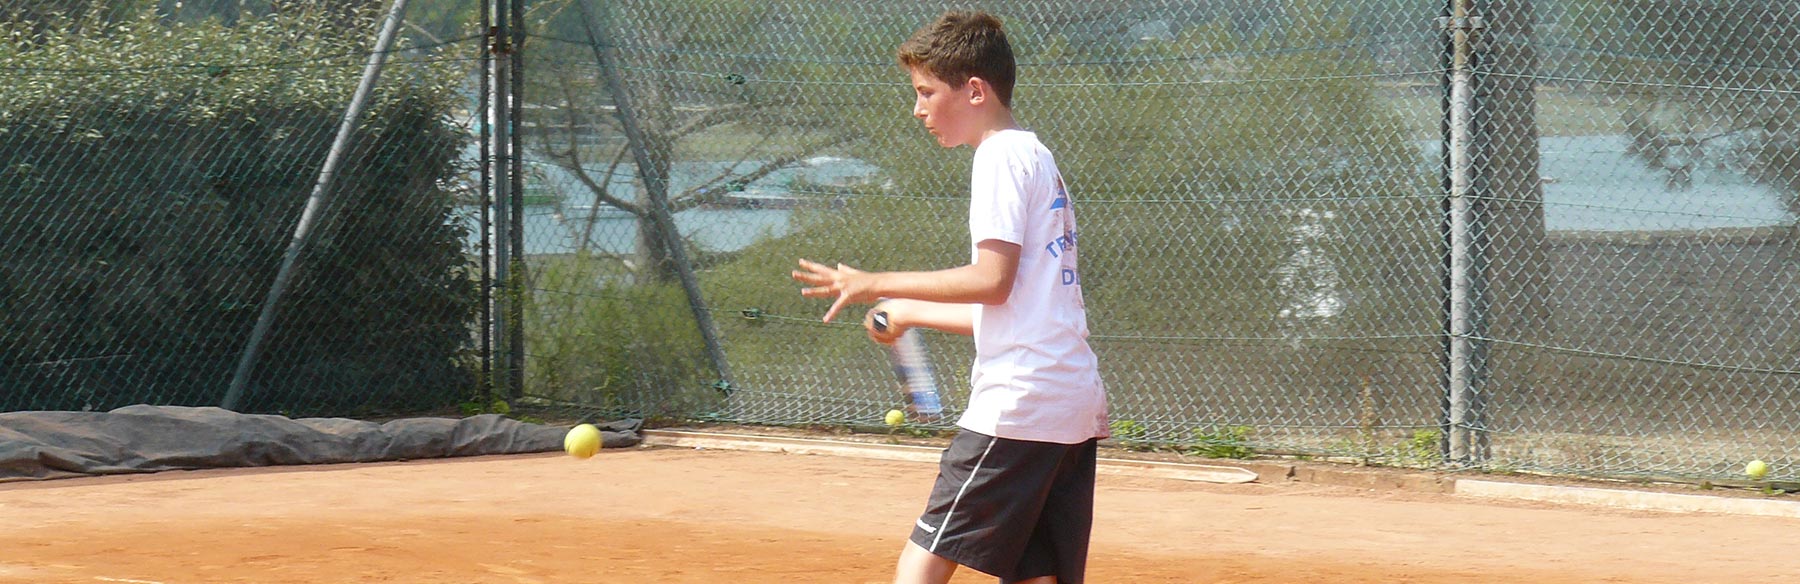 Un joueur de tennis junior exécute un coup droit.